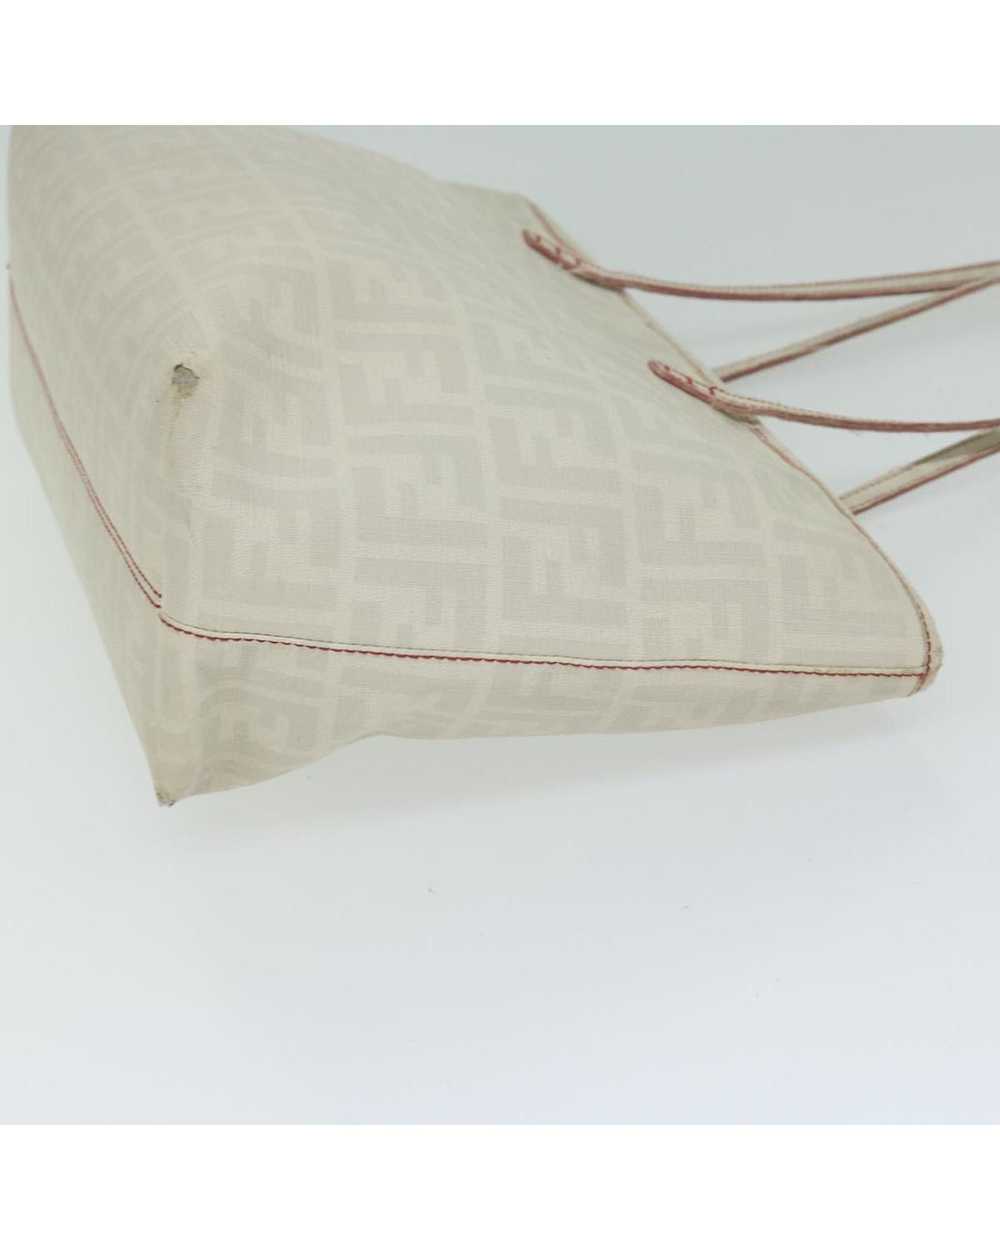 Fendi White Zucca Canvas Tote Bag with Accessory … - image 3